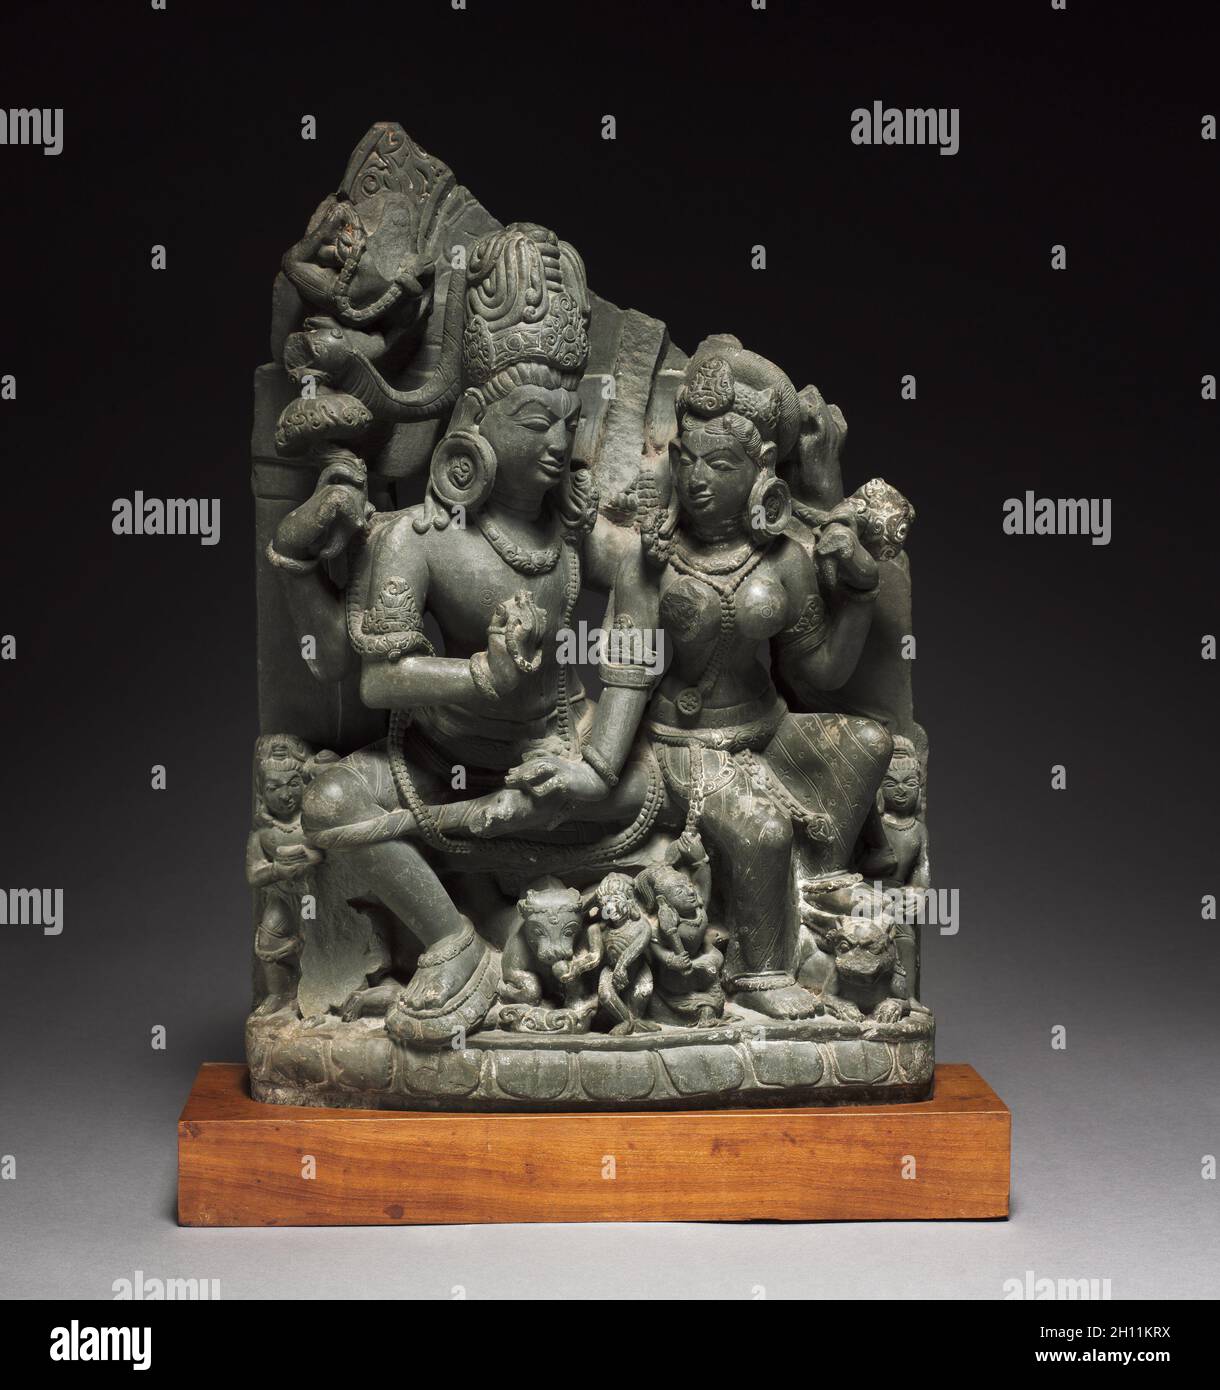 Siva e Parvati (Uma-Mahesvara), 900s. India del nord, Uttaranchal, Almoral, decimo secolo. Verdastro-grigio scisto; complessivo: 48 x 34 x 14,5 cm (18 7/8 x 13 3/8 x 5 11/16 in.). Foto Stock